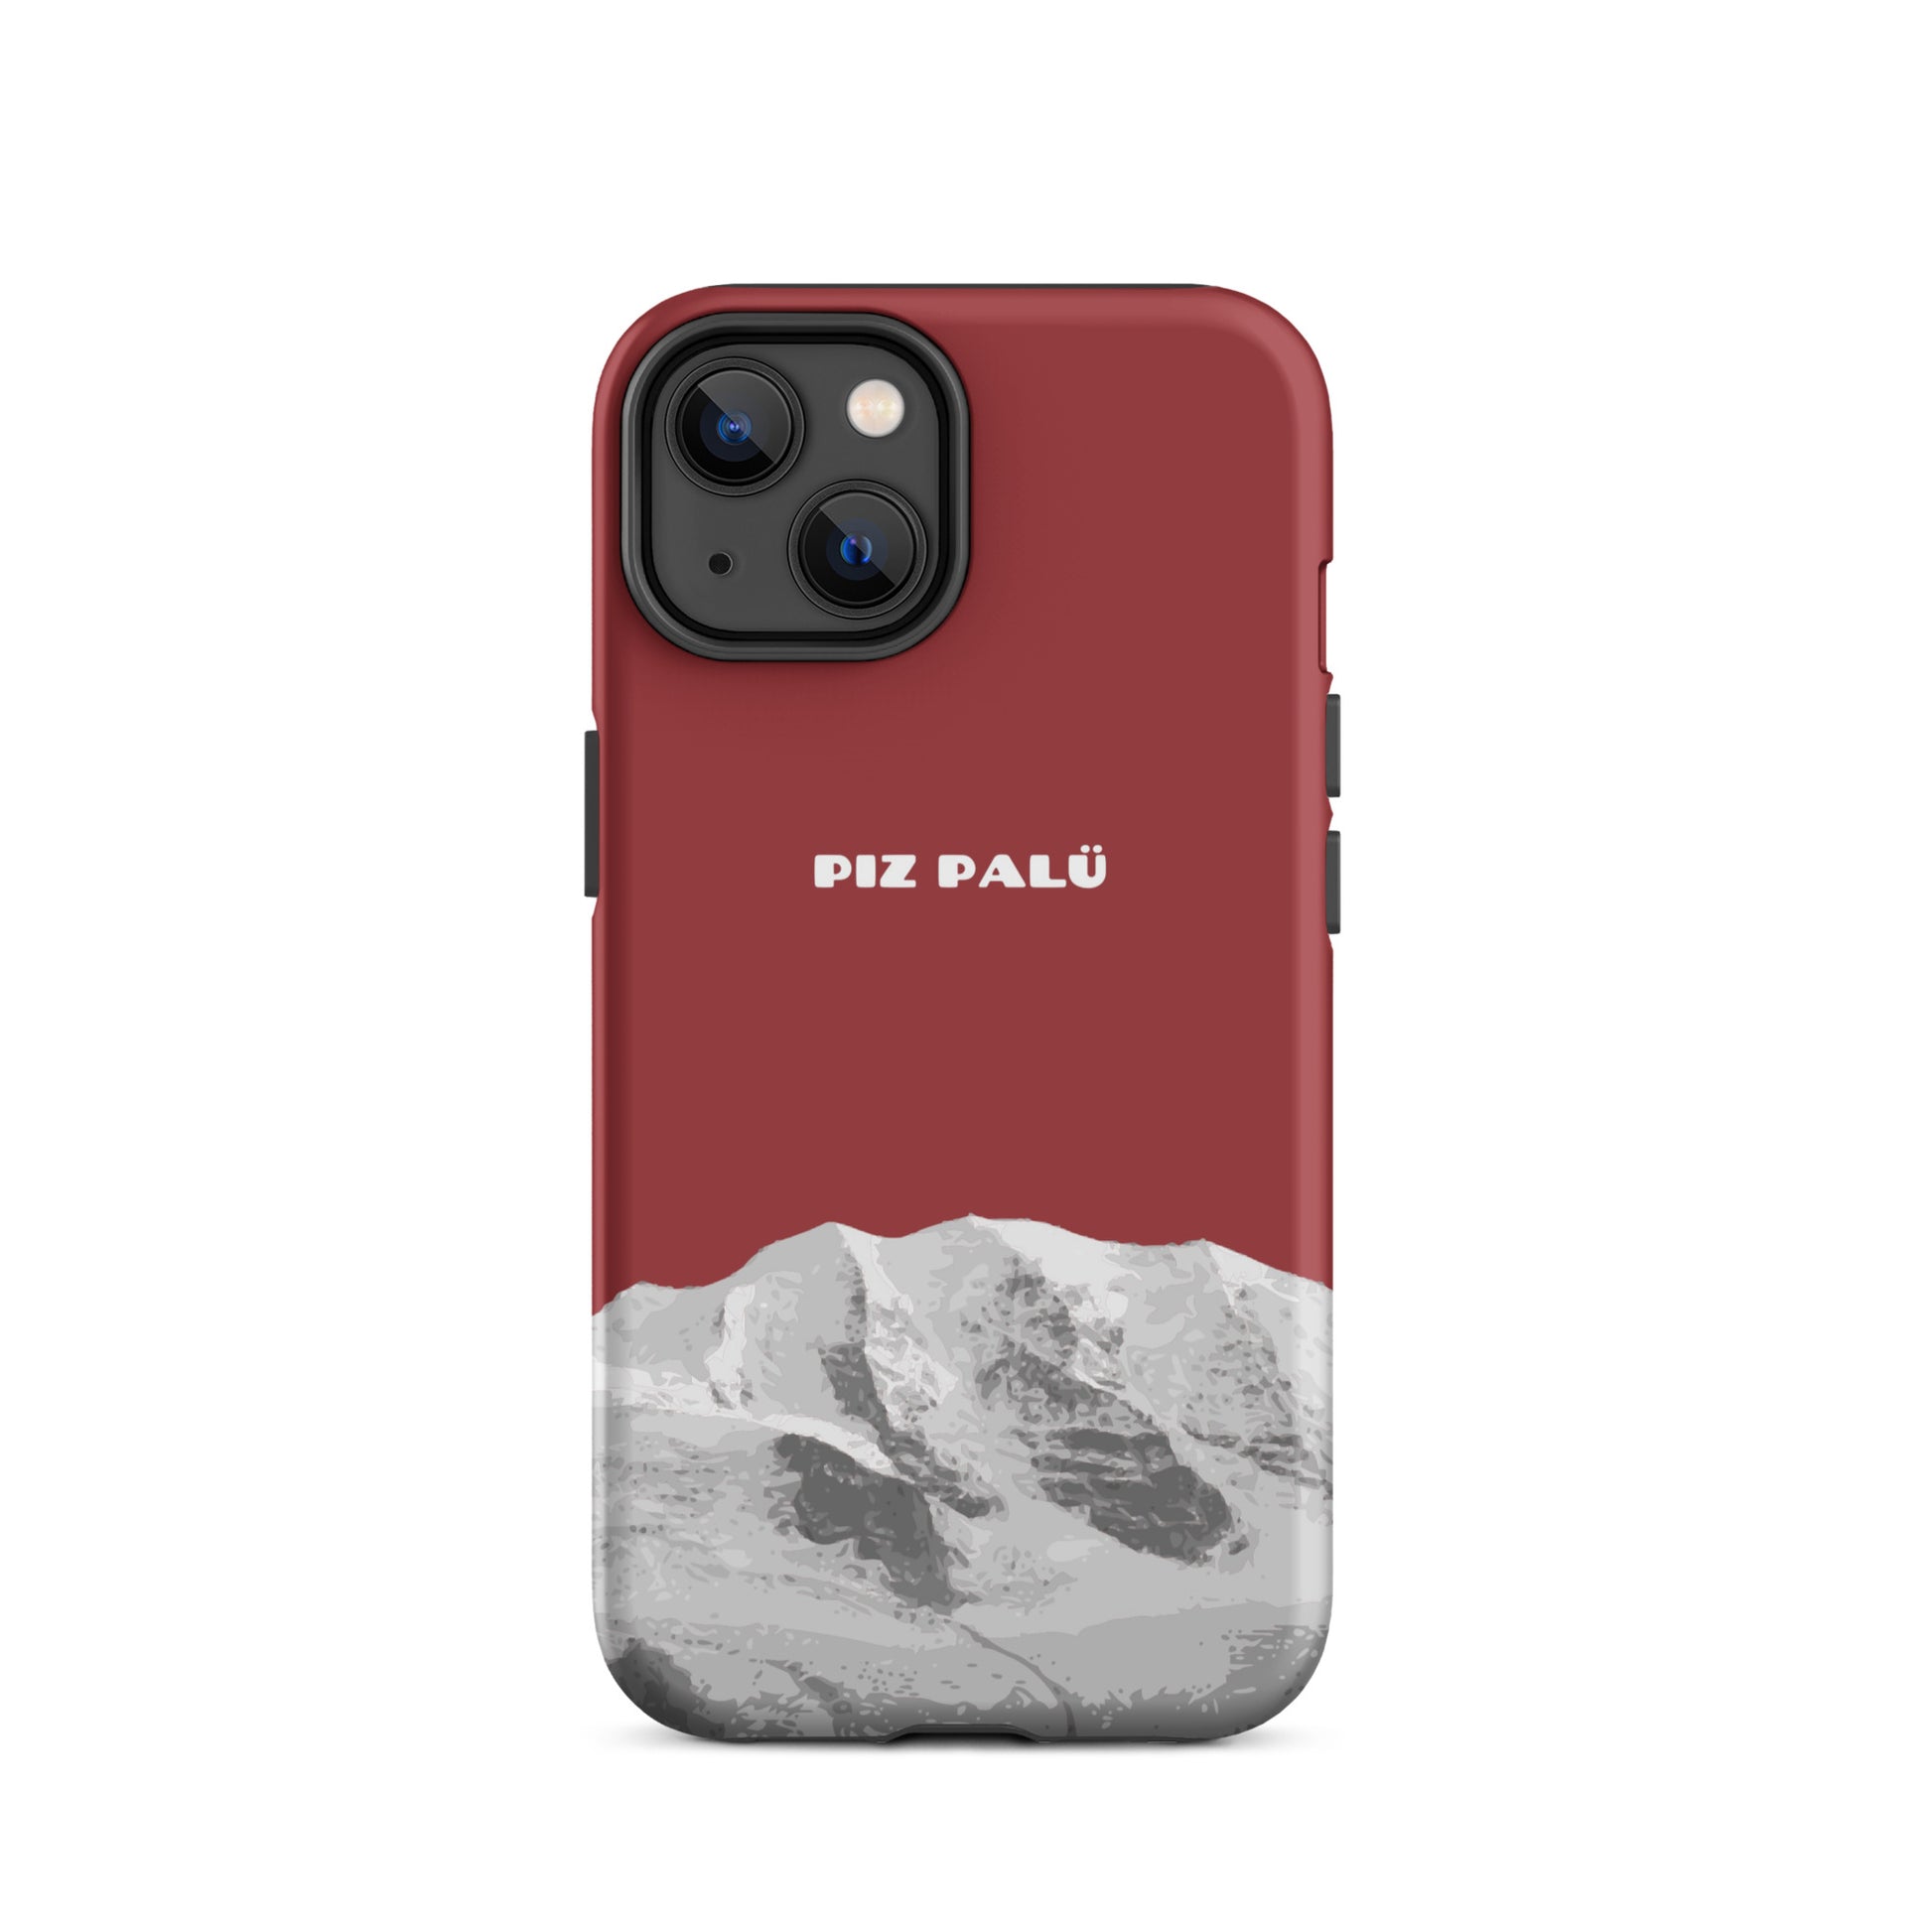 Hülle für das iPhone 14 von Apple in der Farbe Pastellviolett, dass den Piz Palü in Graubünden zeigt.